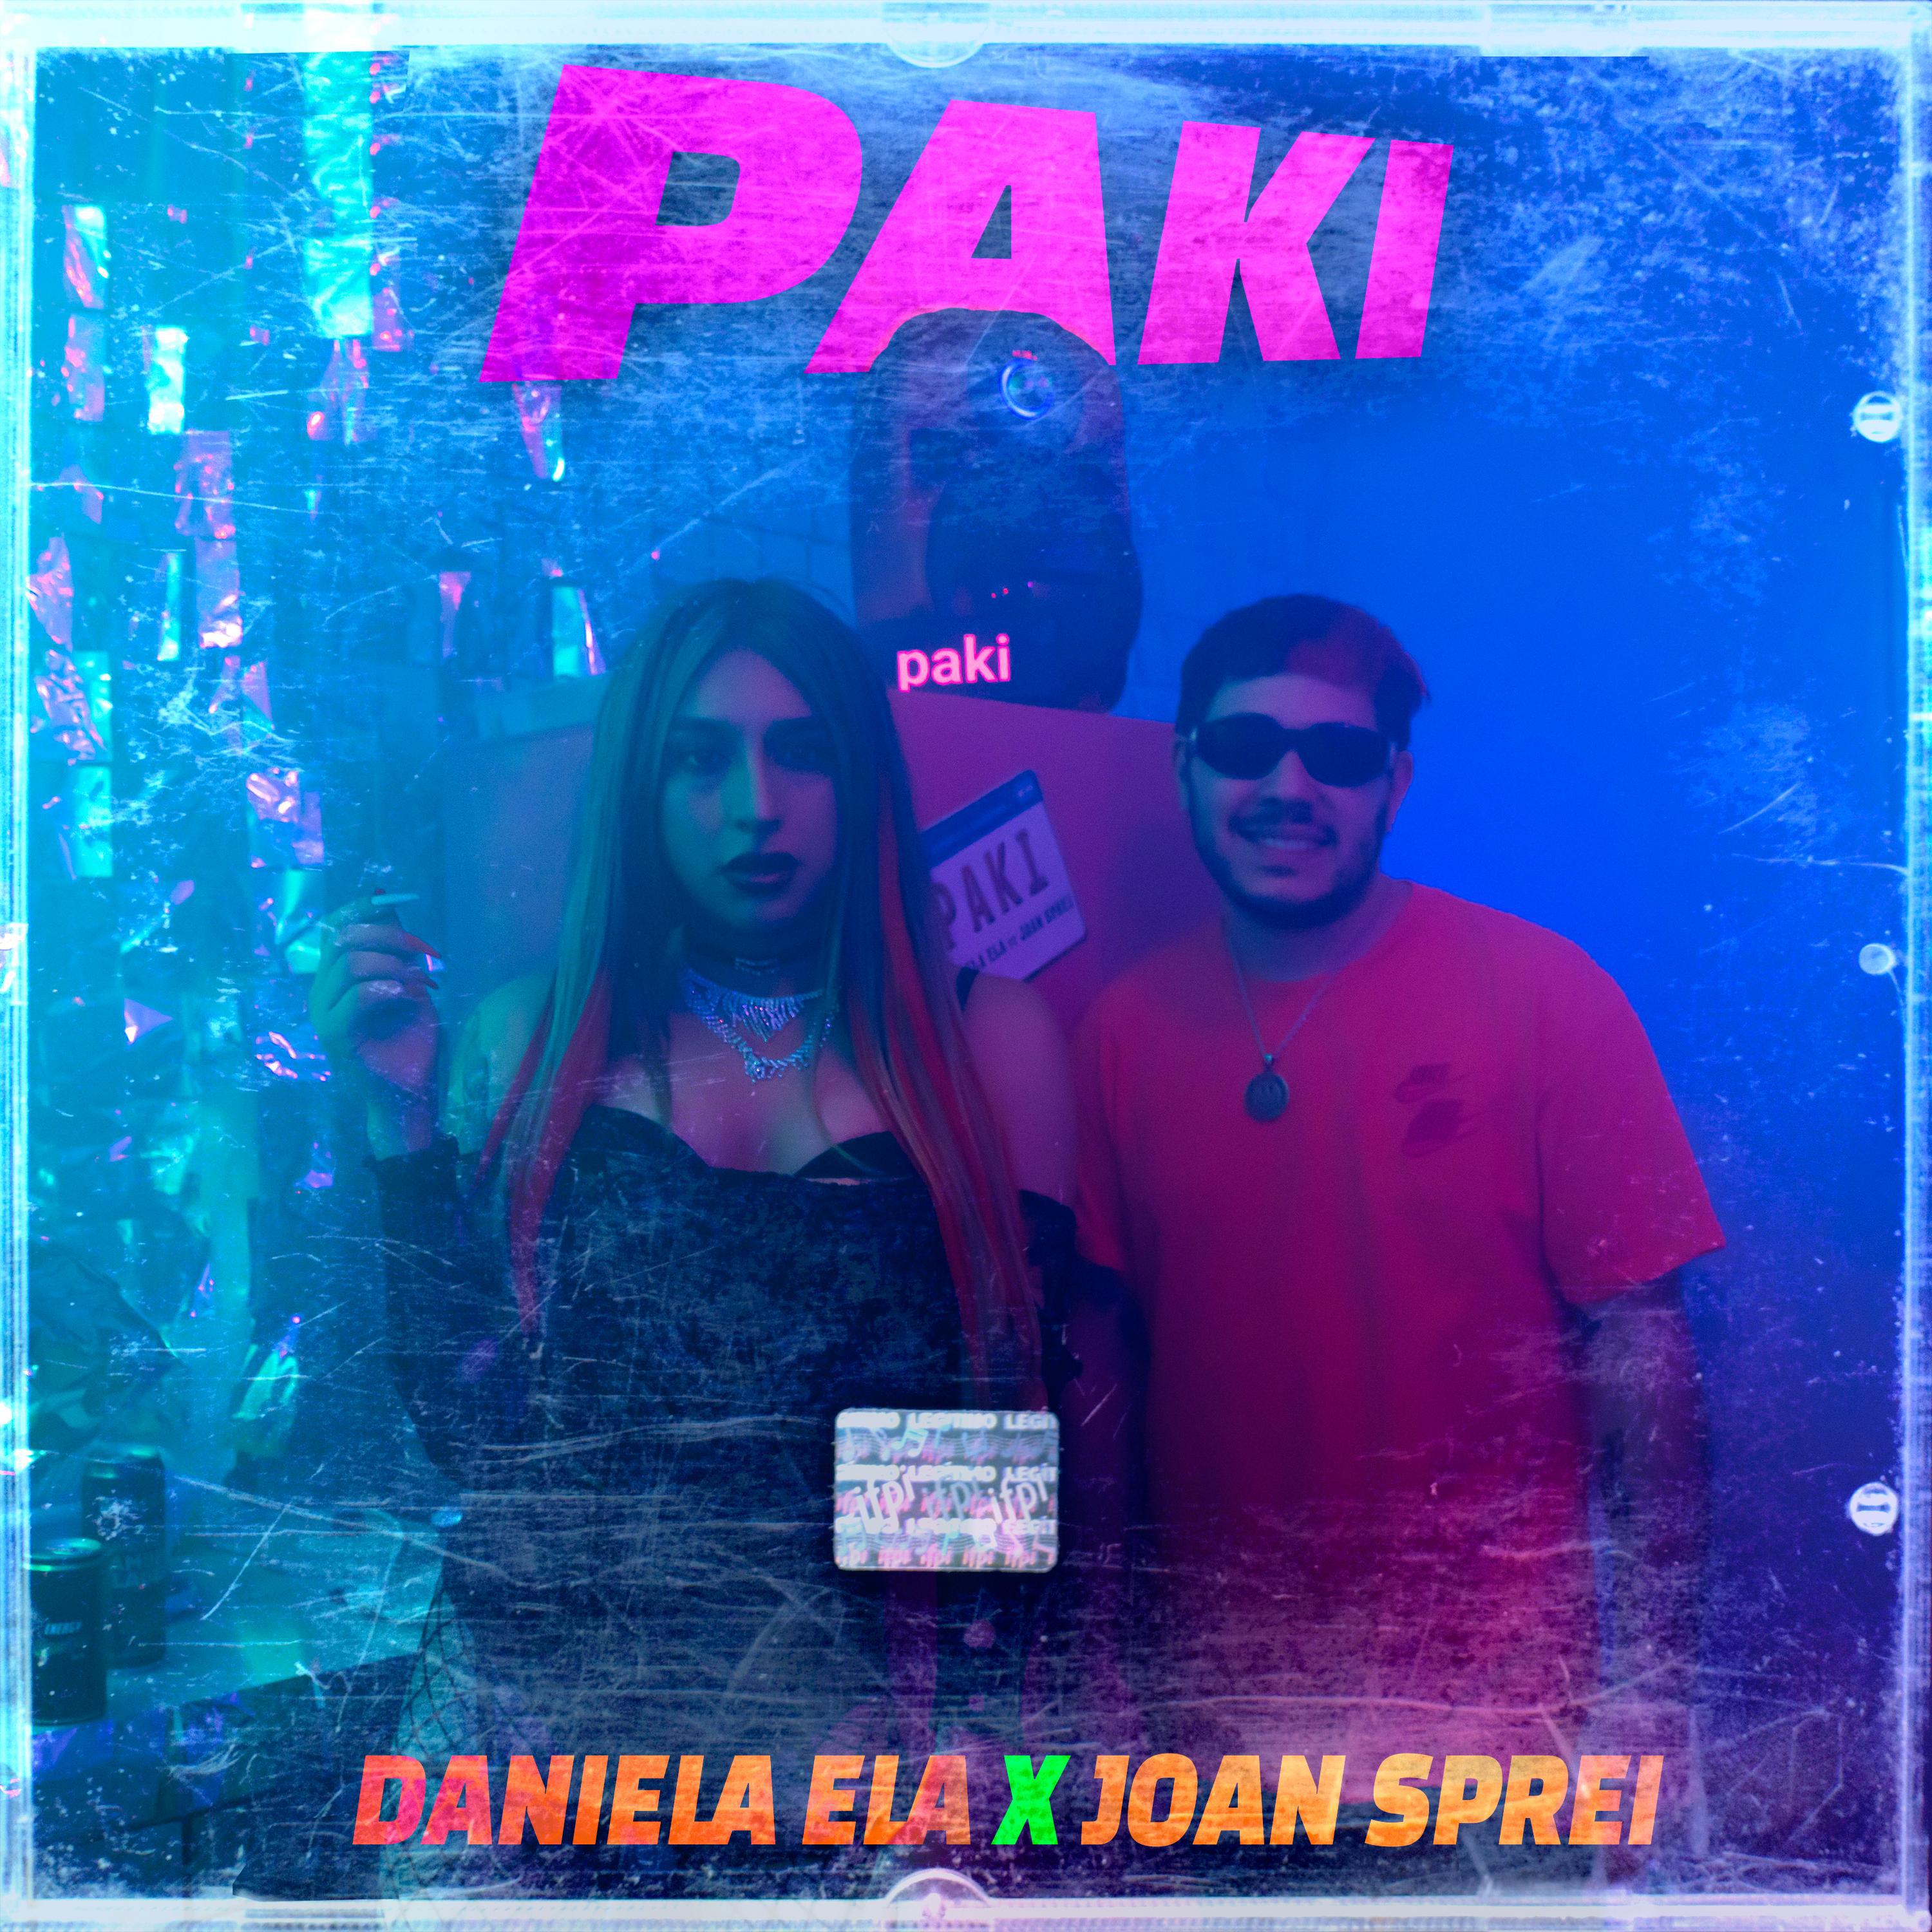 Daniela Ela - Paki (feat. joan sprei)